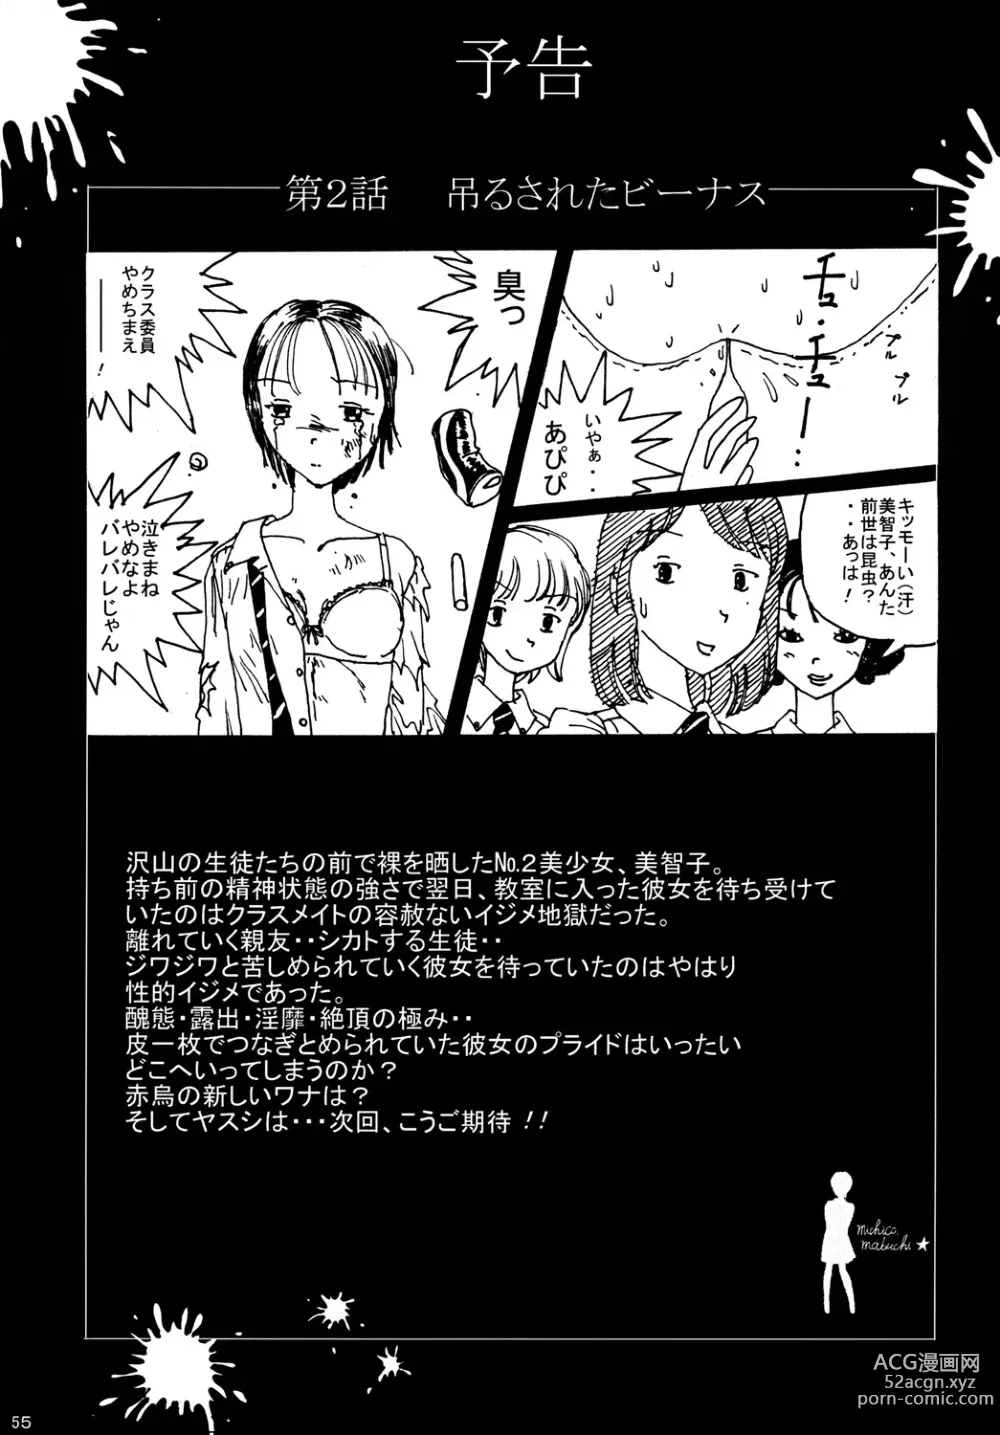 Page 54 of doujinshi Mune Ippai no Dizzy